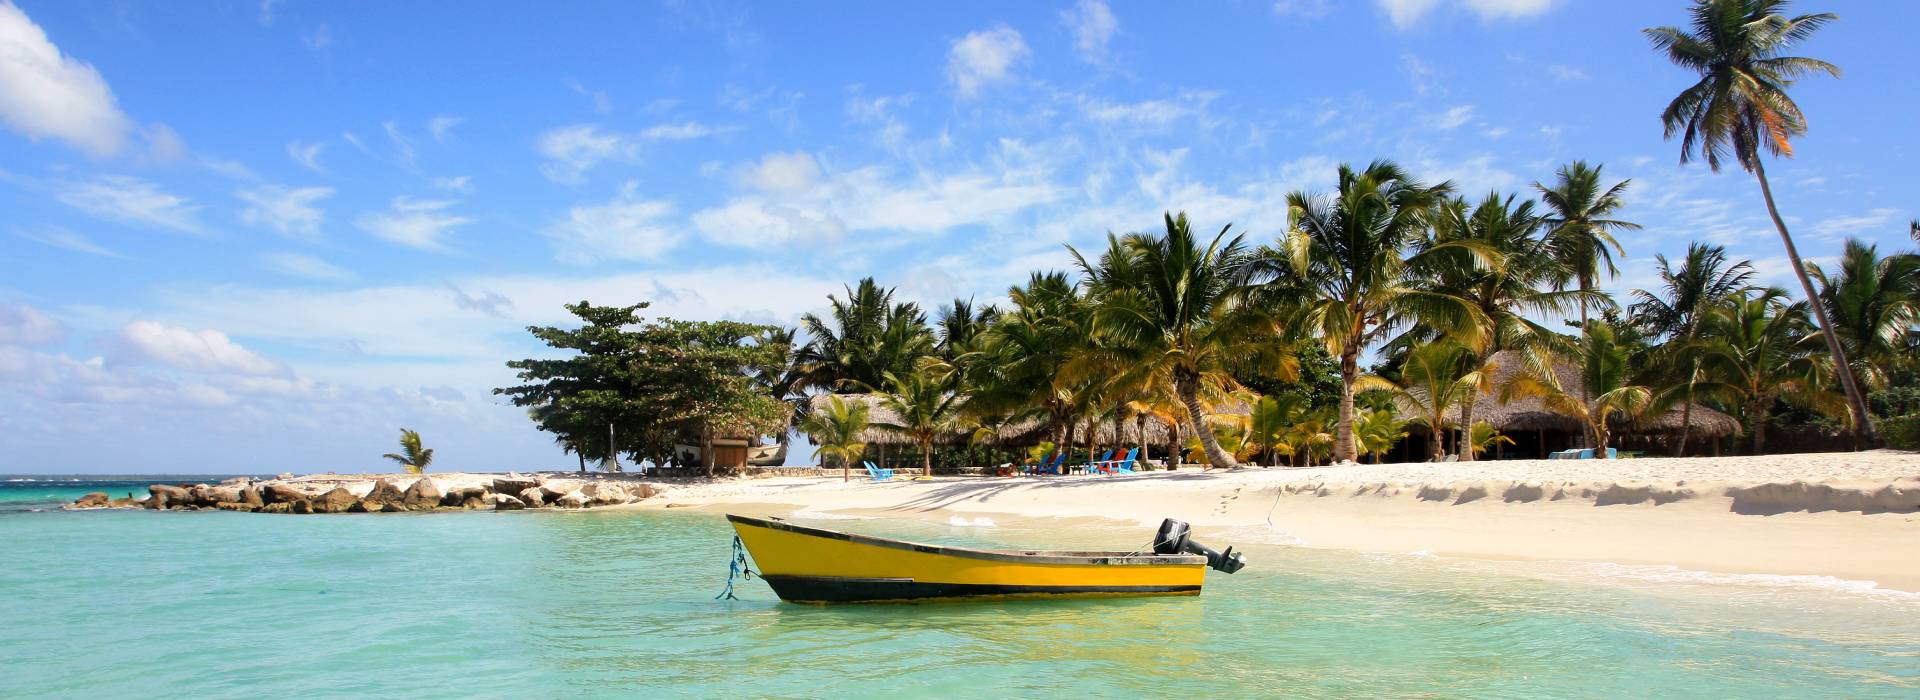 haiti-sea-boat